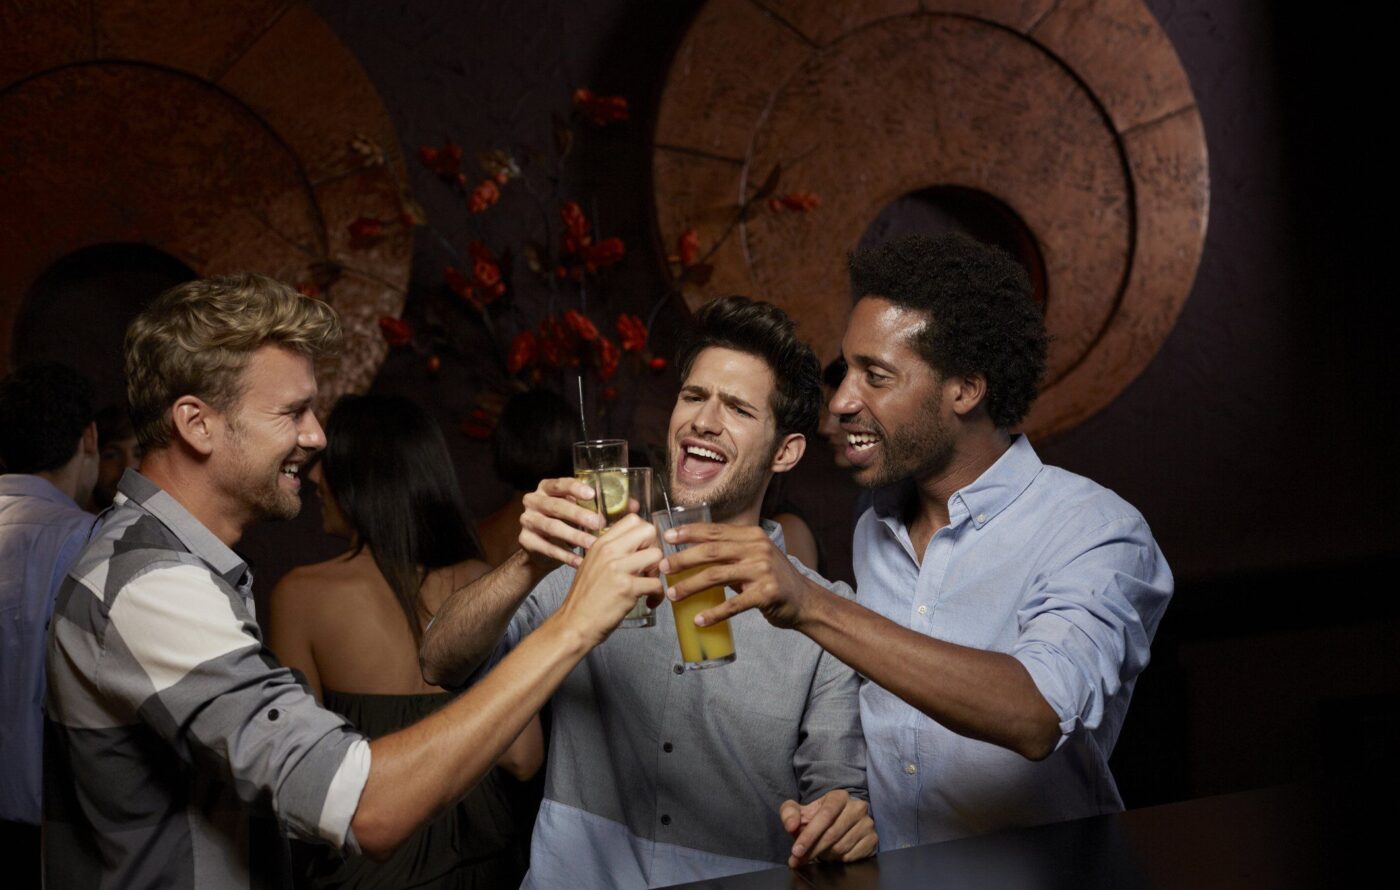 Men 'cheersing' over beers. 